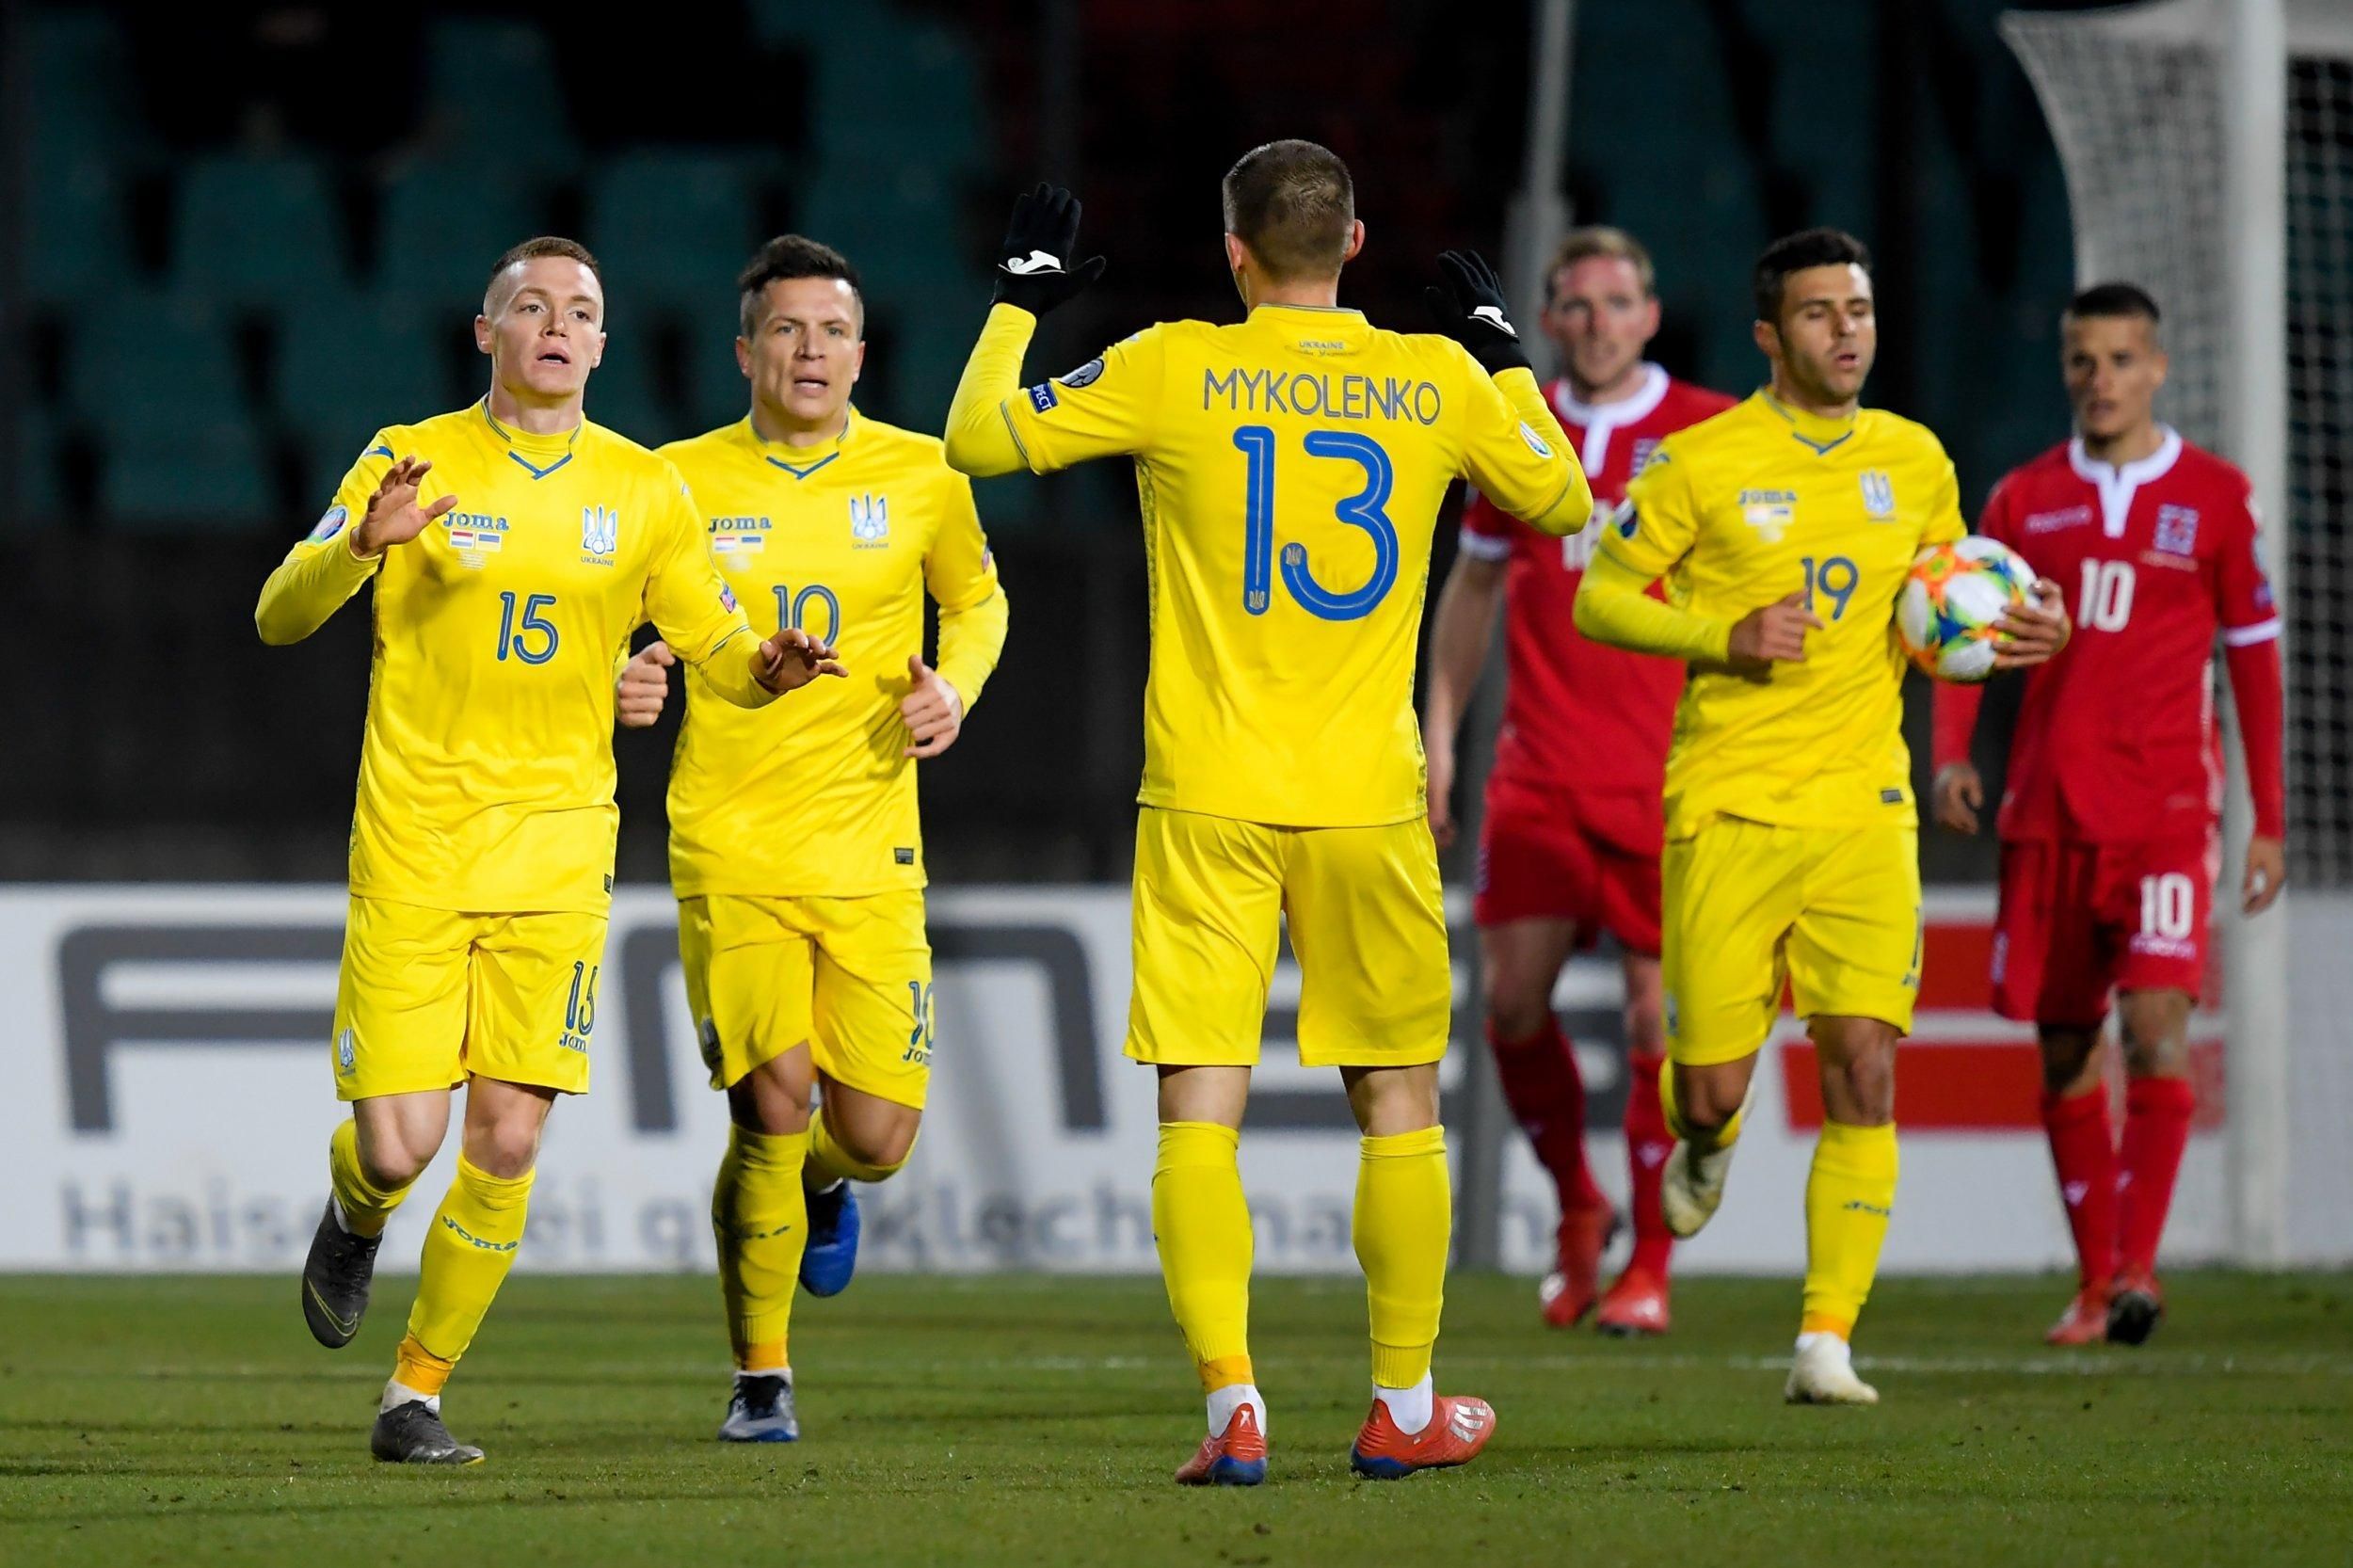 УЕФА отреагировал на лозунг "Слава Украине" на форме сборной – истерика России безосновательна